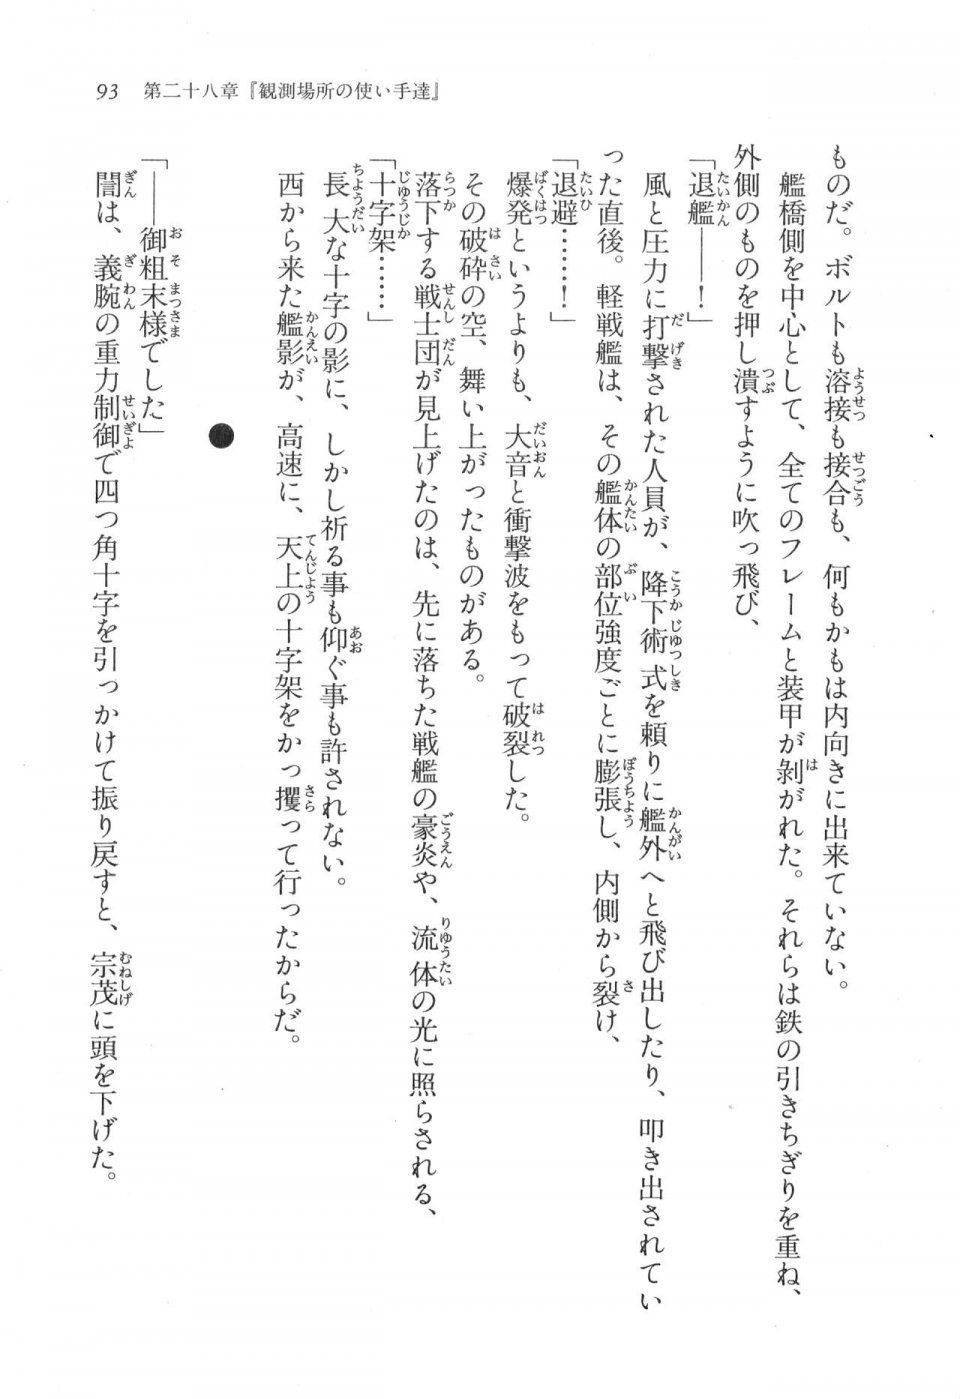 Kyoukai Senjou no Horizon LN Vol 17(7B) - Photo #93